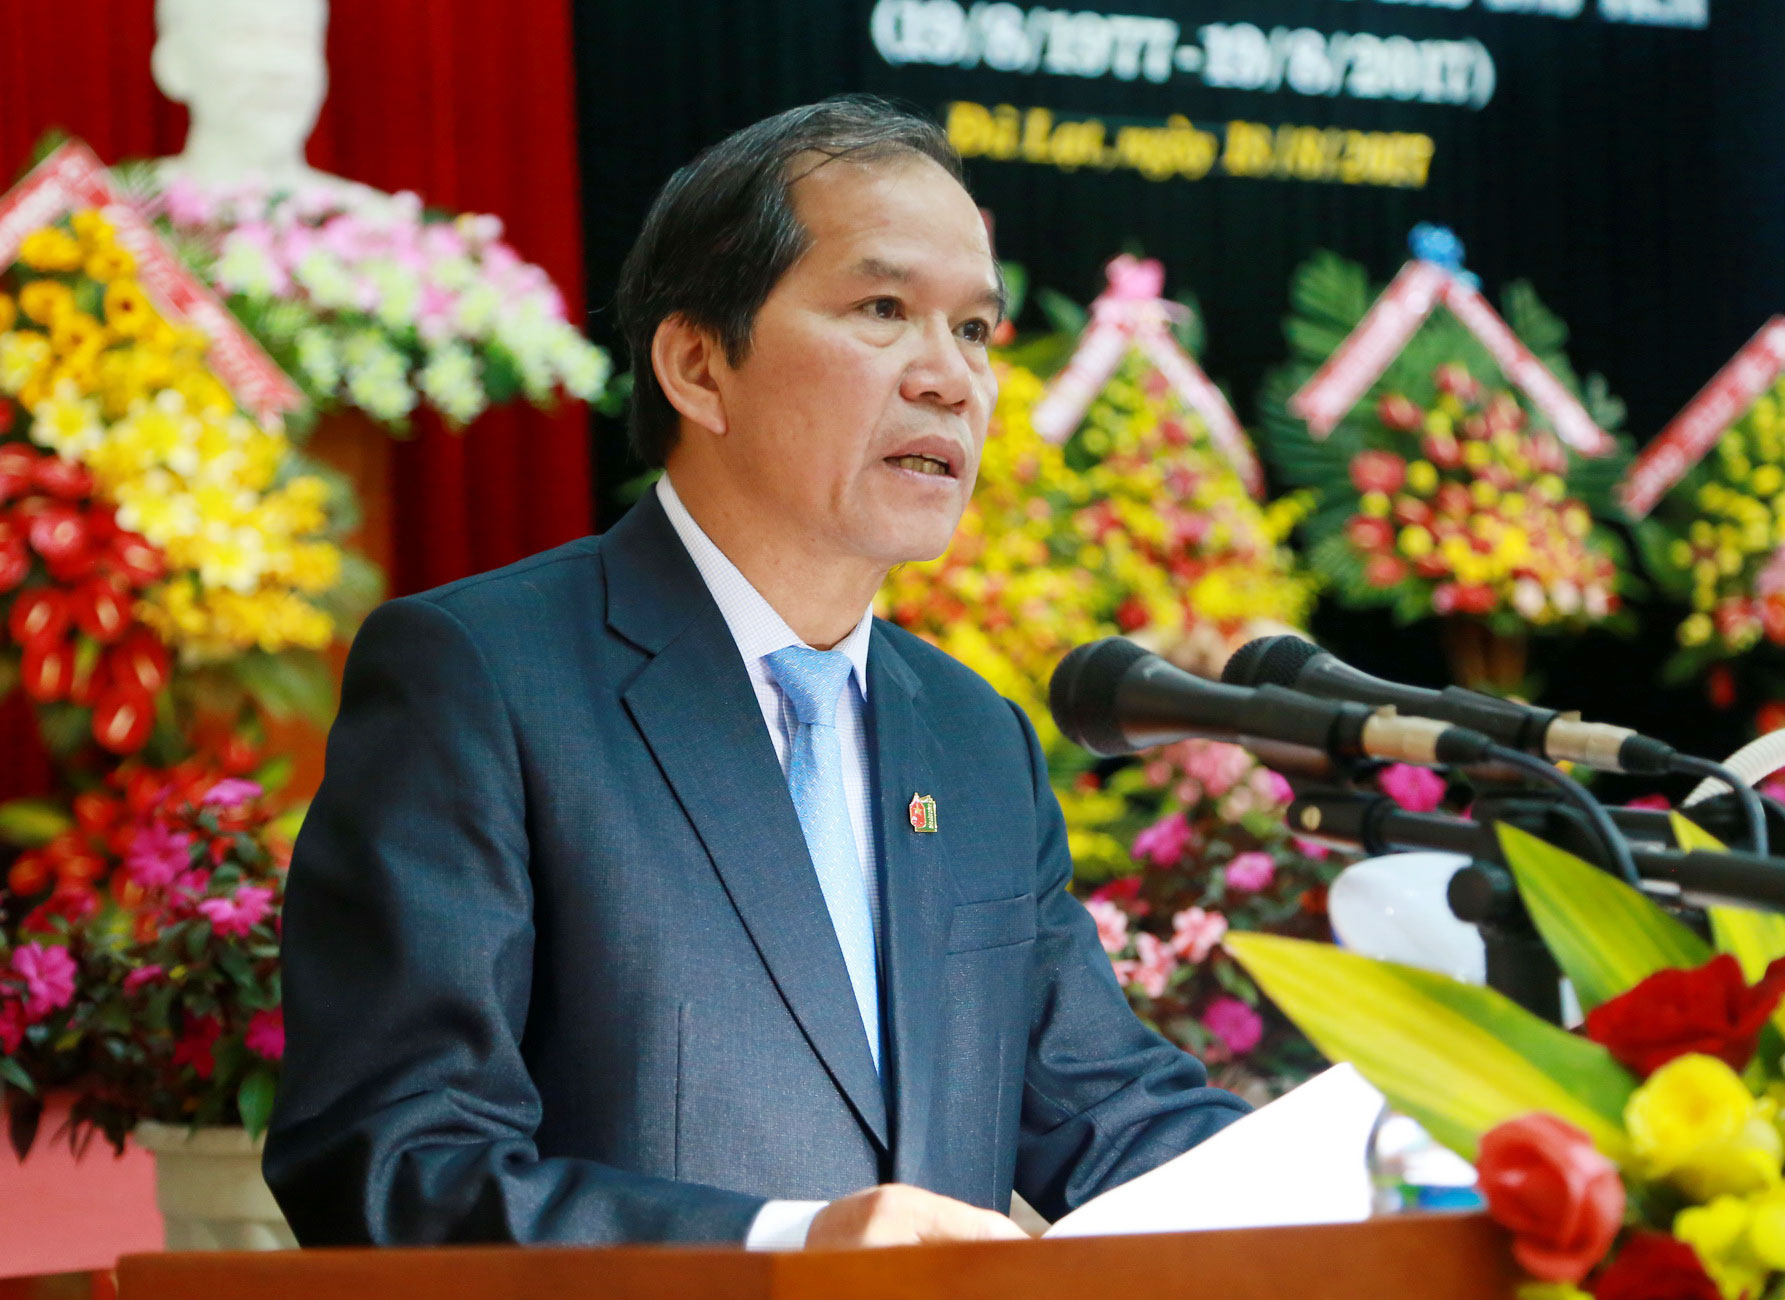 Đồng chí Nguyễn Xuân Tiến, Bí thư Tỉnh ủy Lâm Đồng phát biểu chúc mừng Báo Lâm Đồng